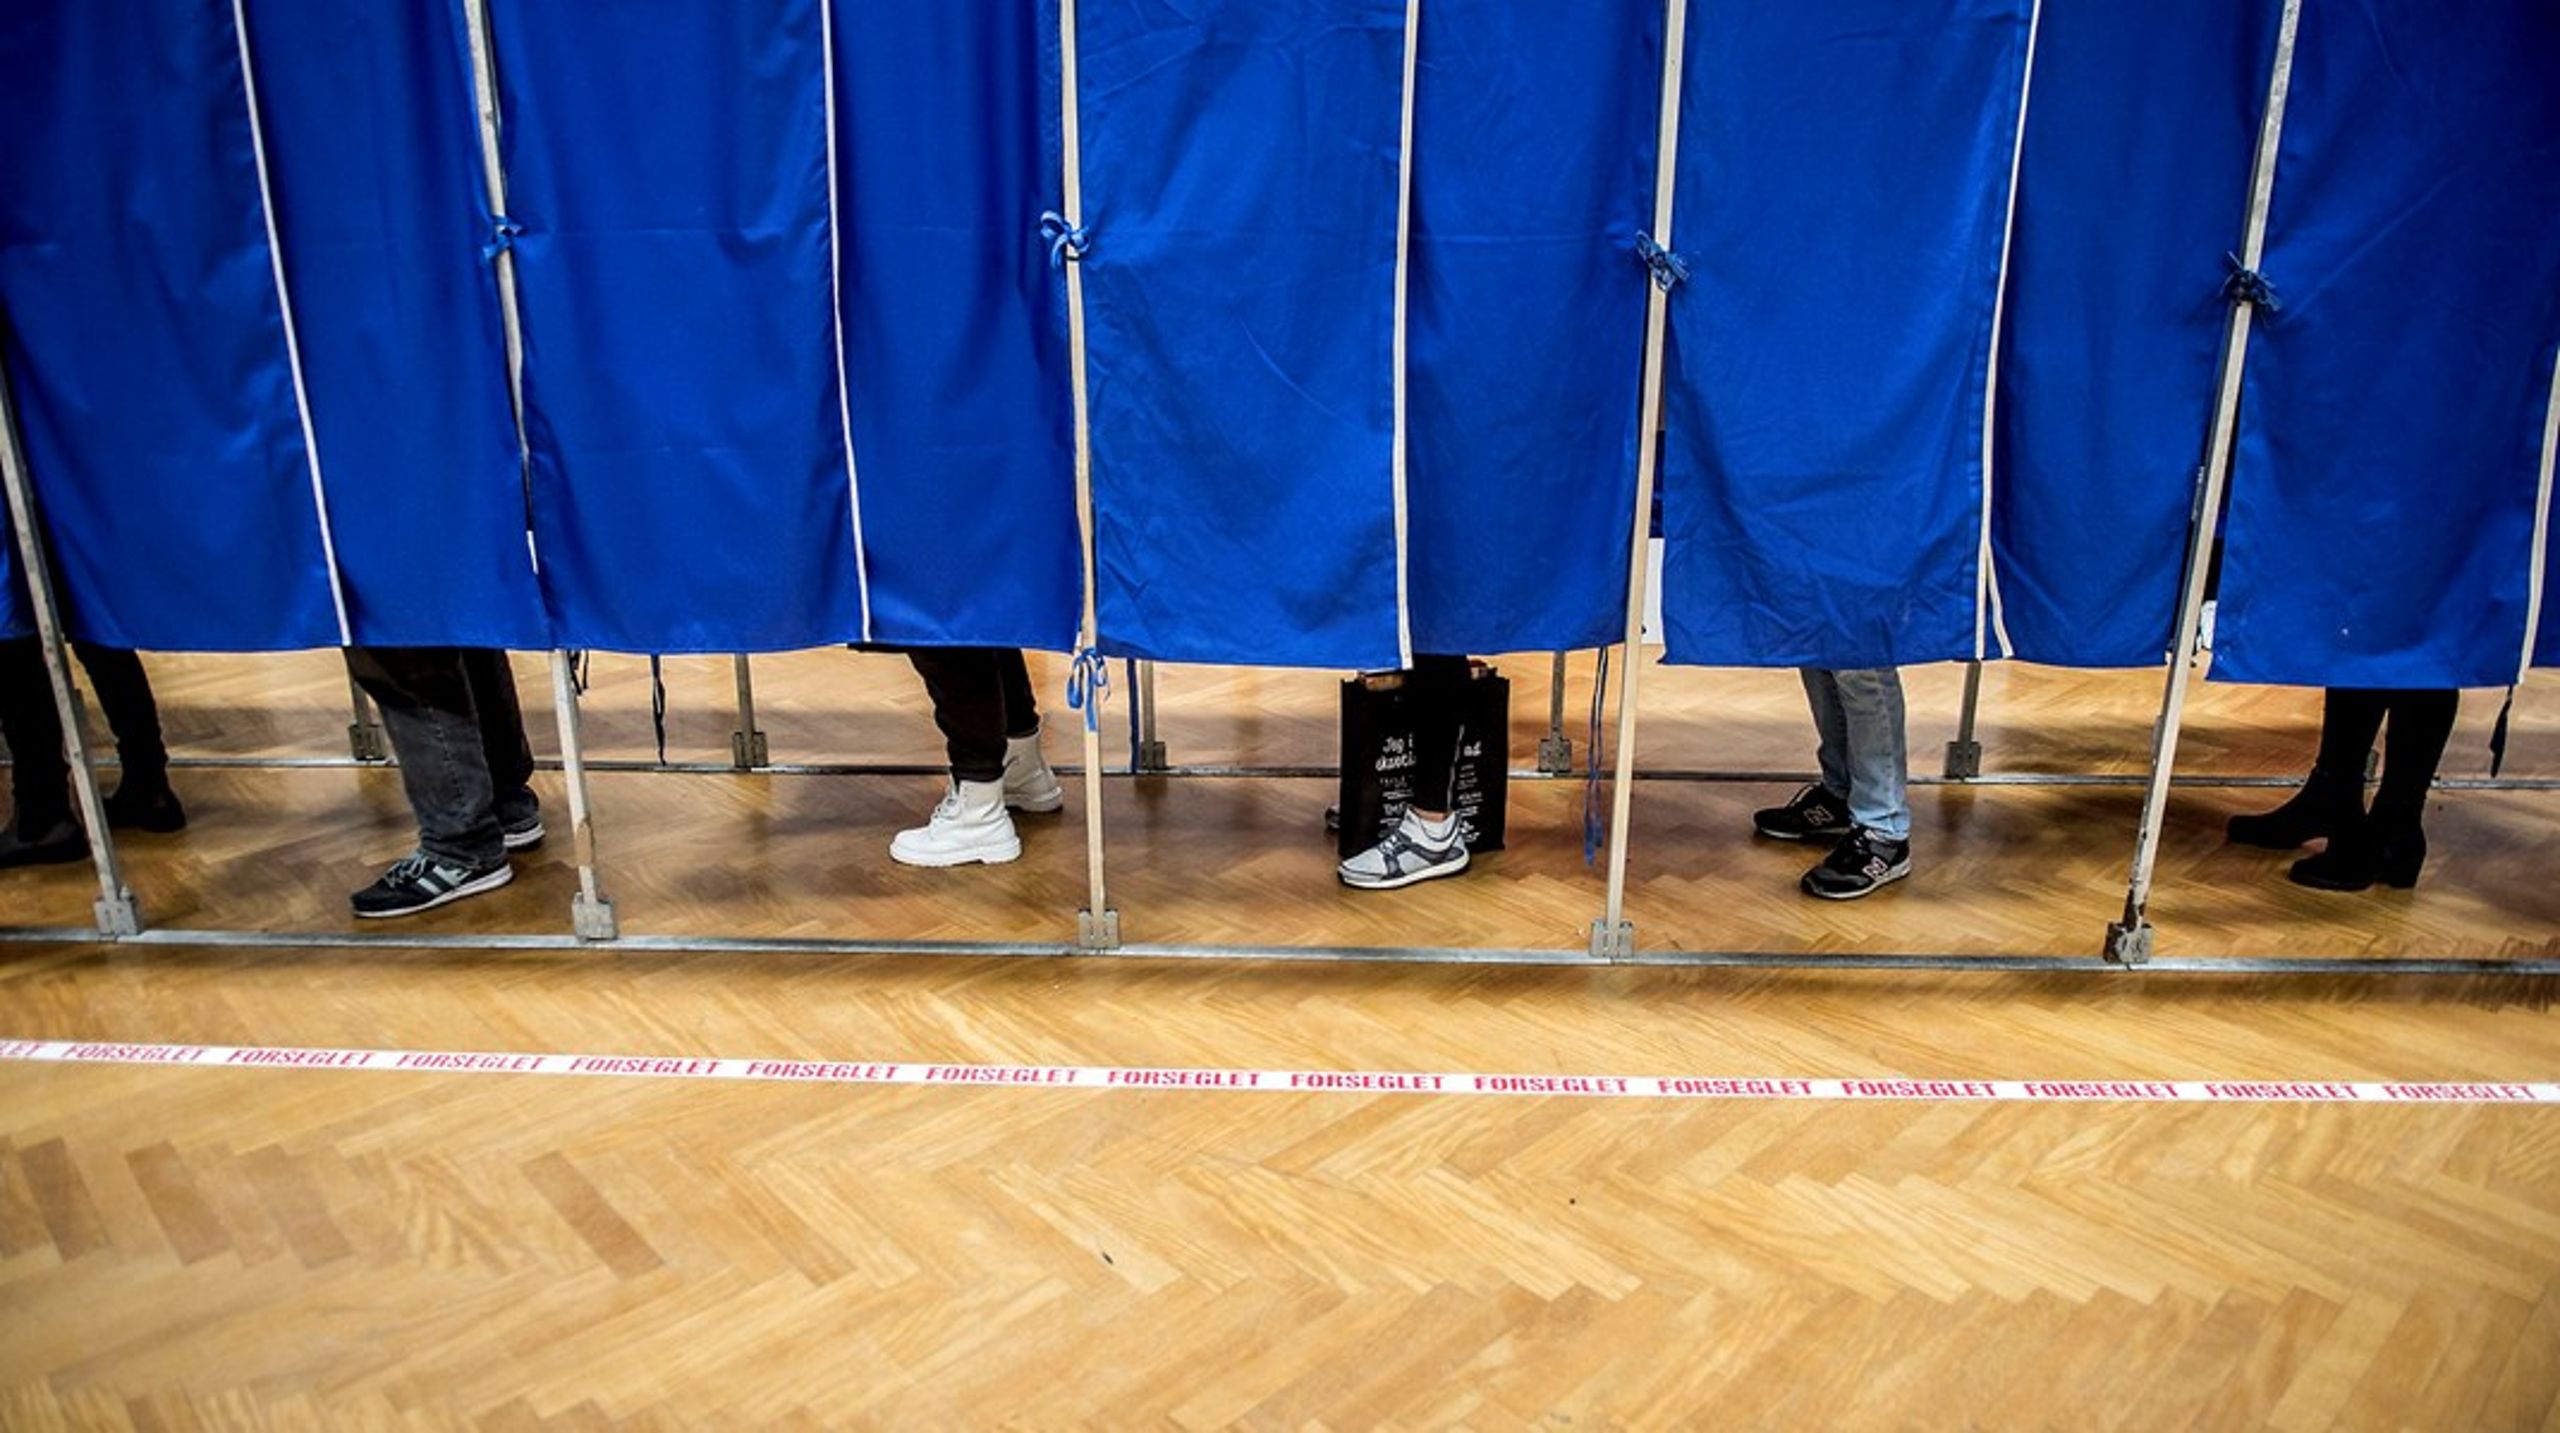 I ti kommuner har forskere fundet eksempler på, at et parti har fået et flertal af mandaterne i et byråd uden at have opnået et flertal af stemmerne.